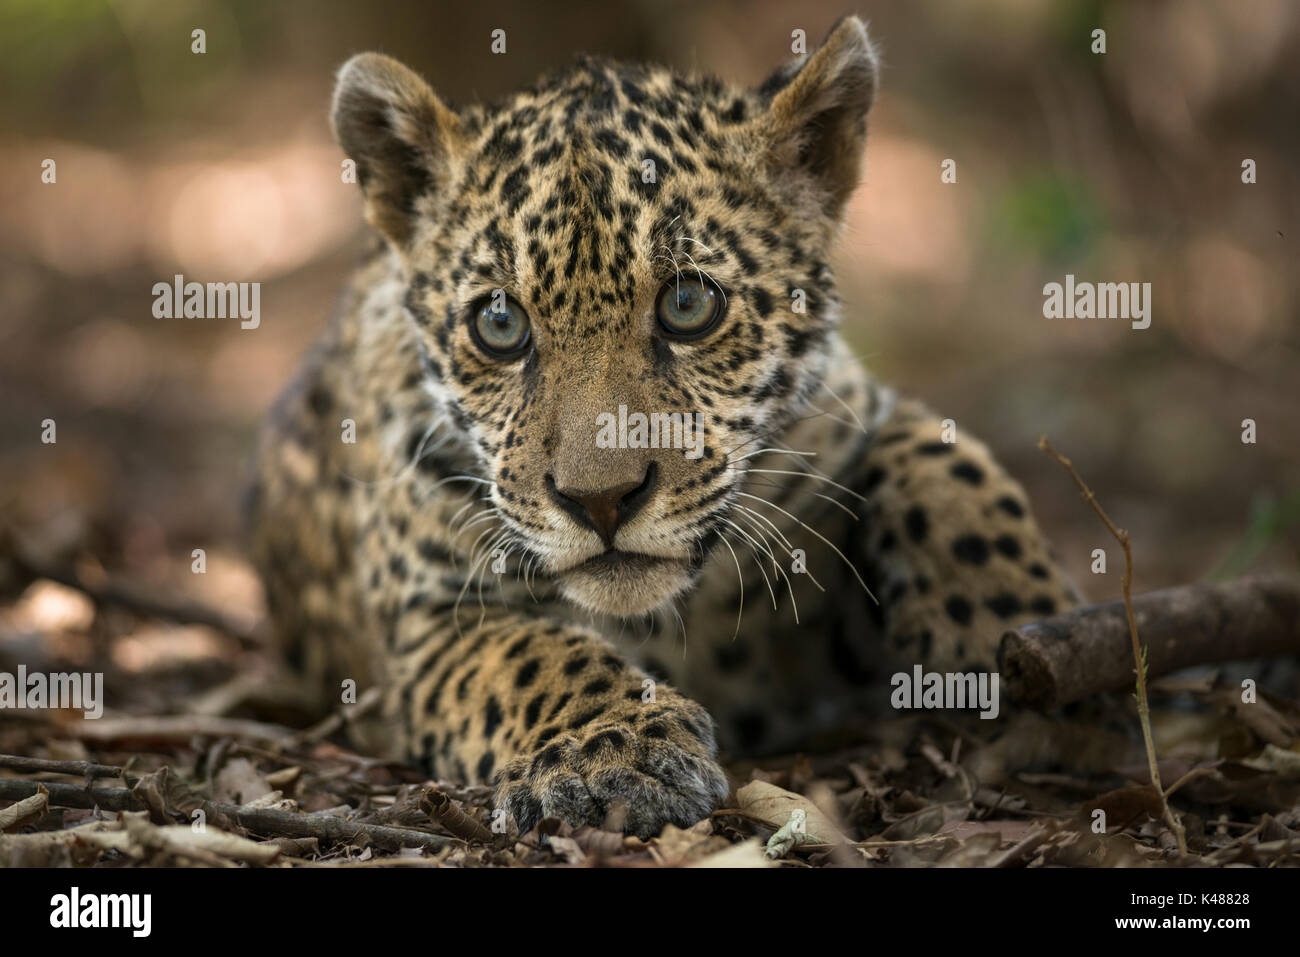 A Jaguar cub (Panthera onca) Stock Photo